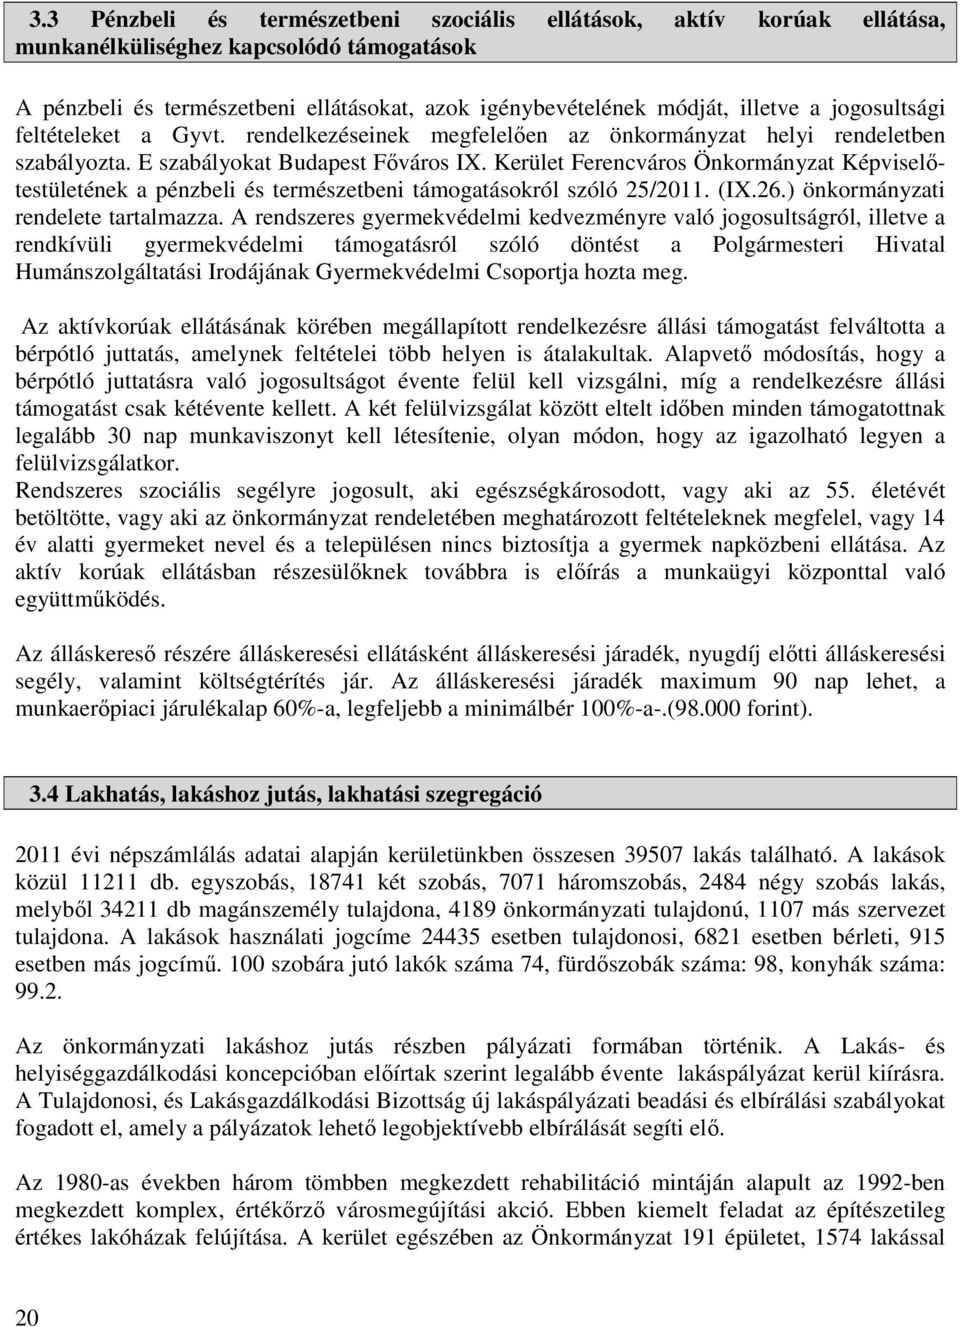 Kerület Ferencváros Önkormányzat Képviselőtestületének a pénzbeli és természetbeni támogatásokról szóló 25/2011. (IX.26.) önkormányzati rendelete tartalmazza.